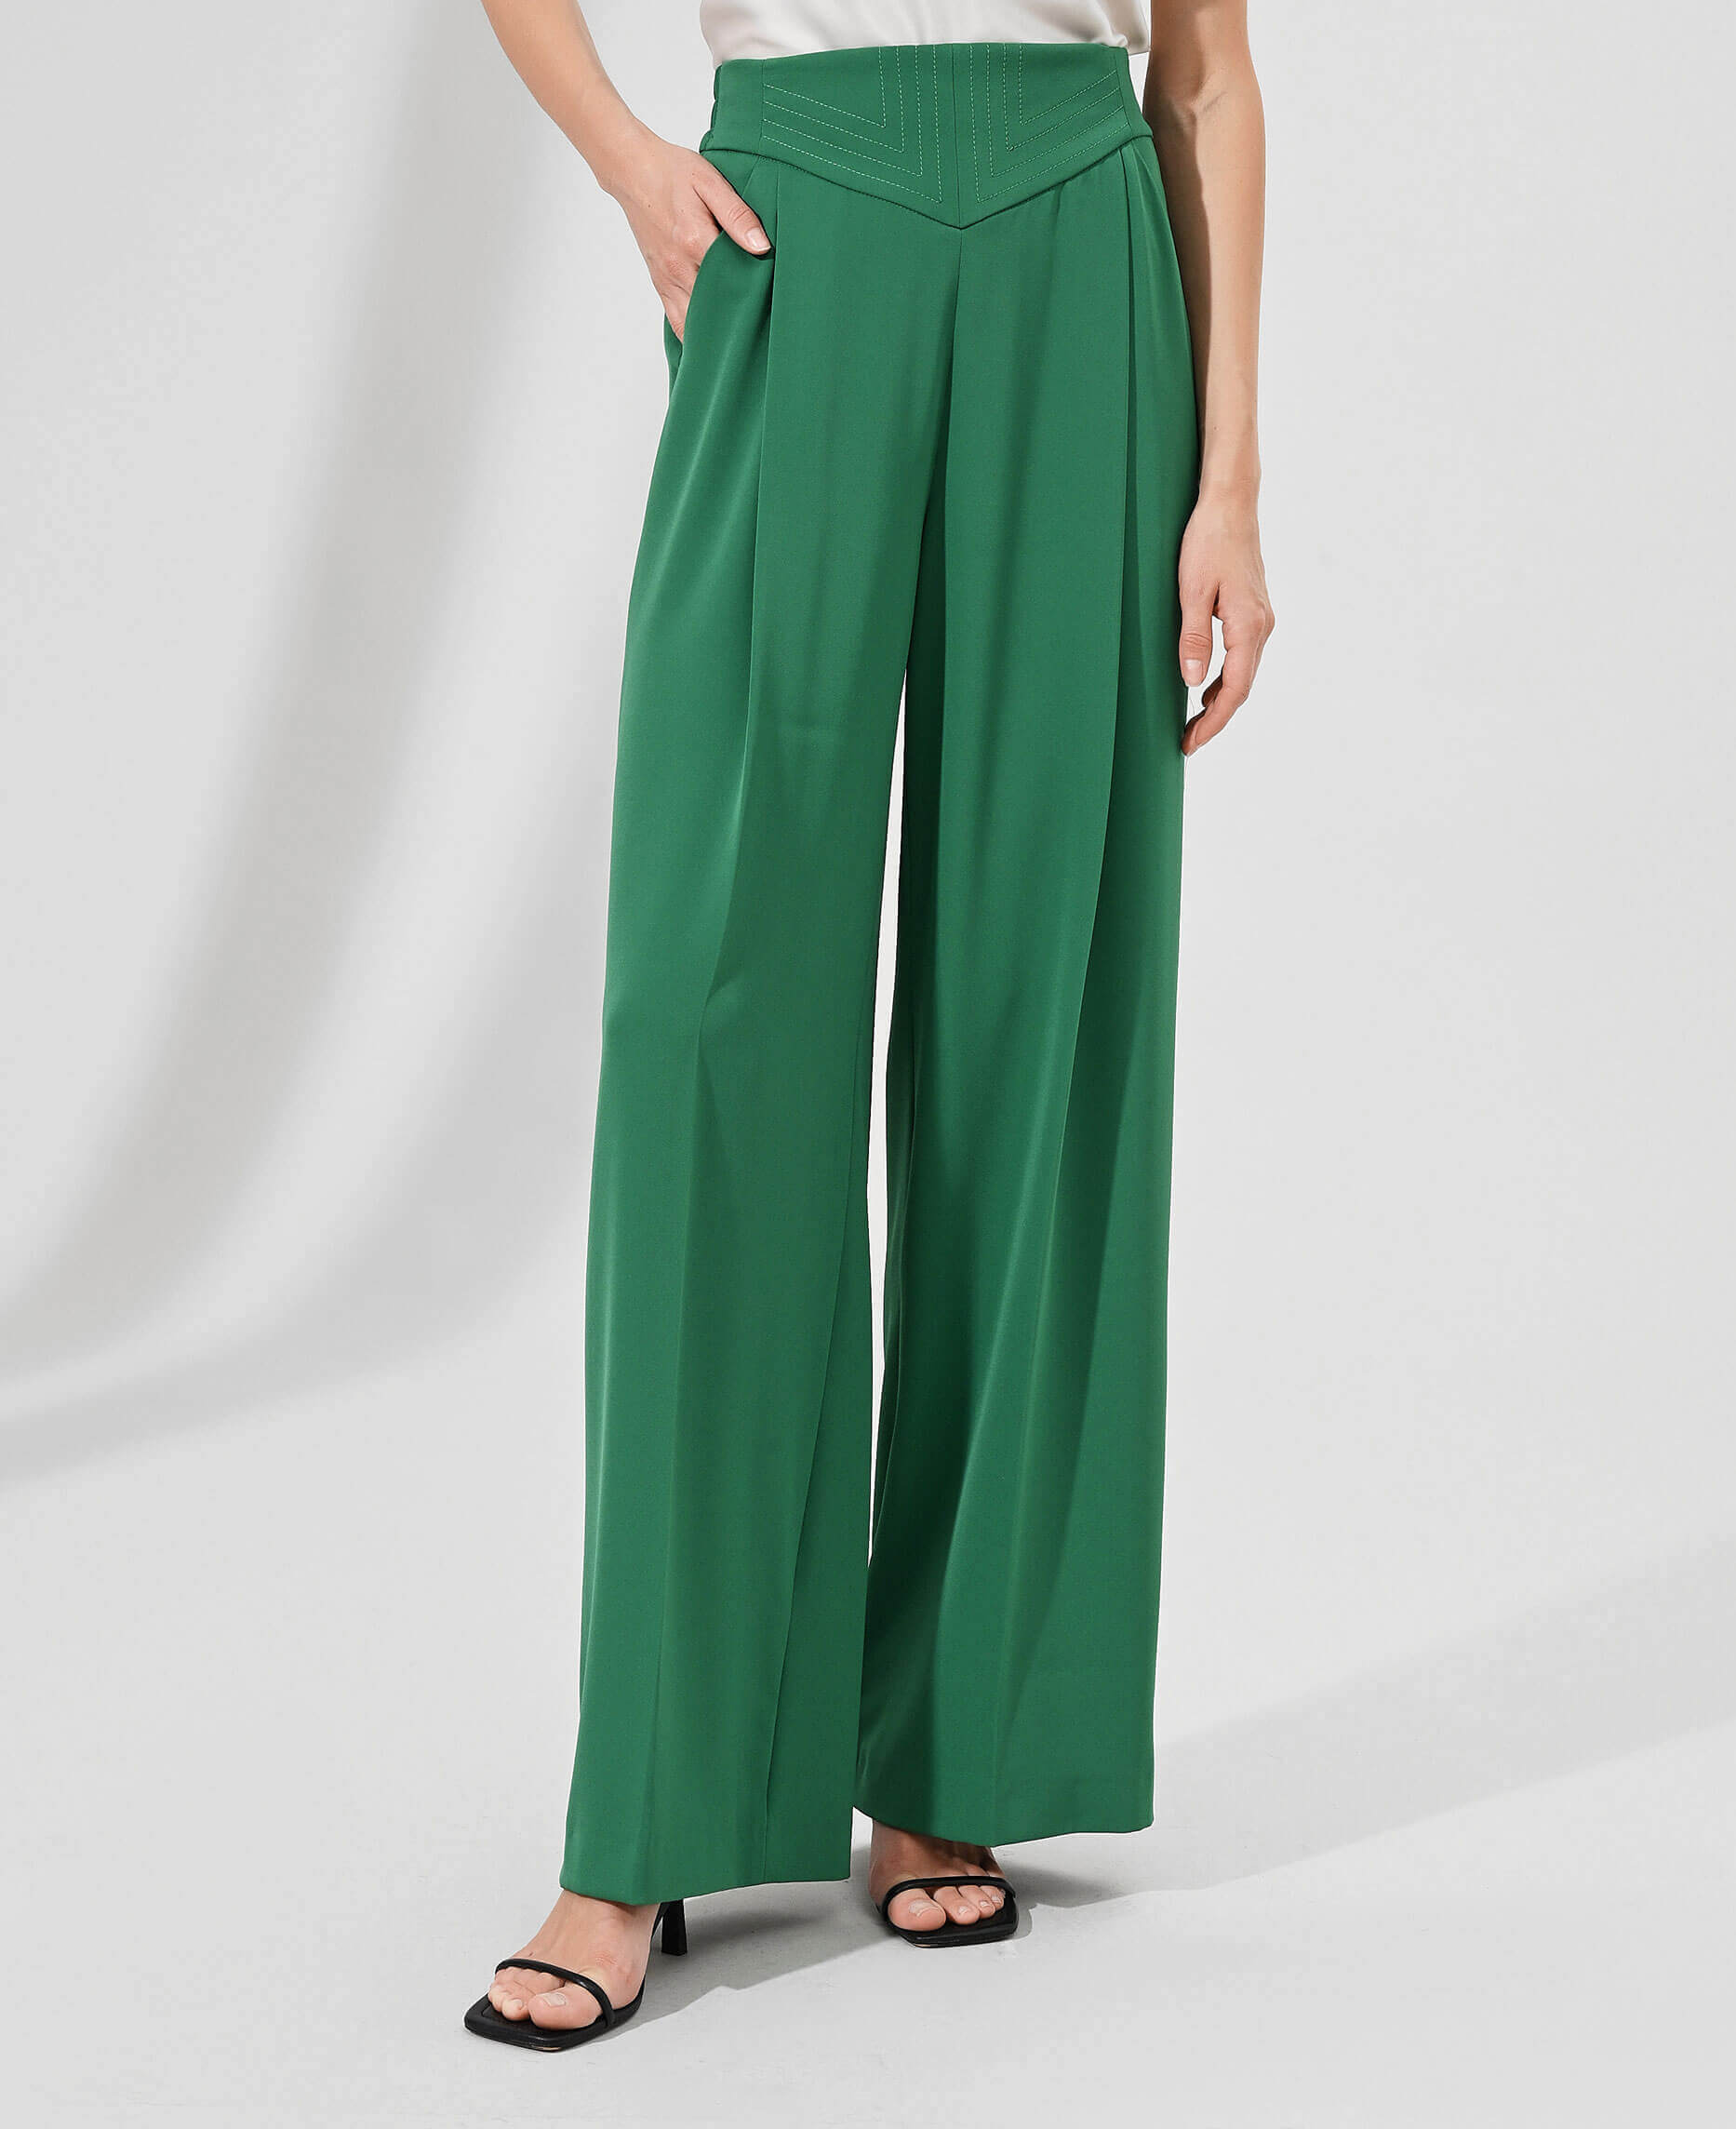 Широкие брюки с высокой посадкой Цвет Зеленый